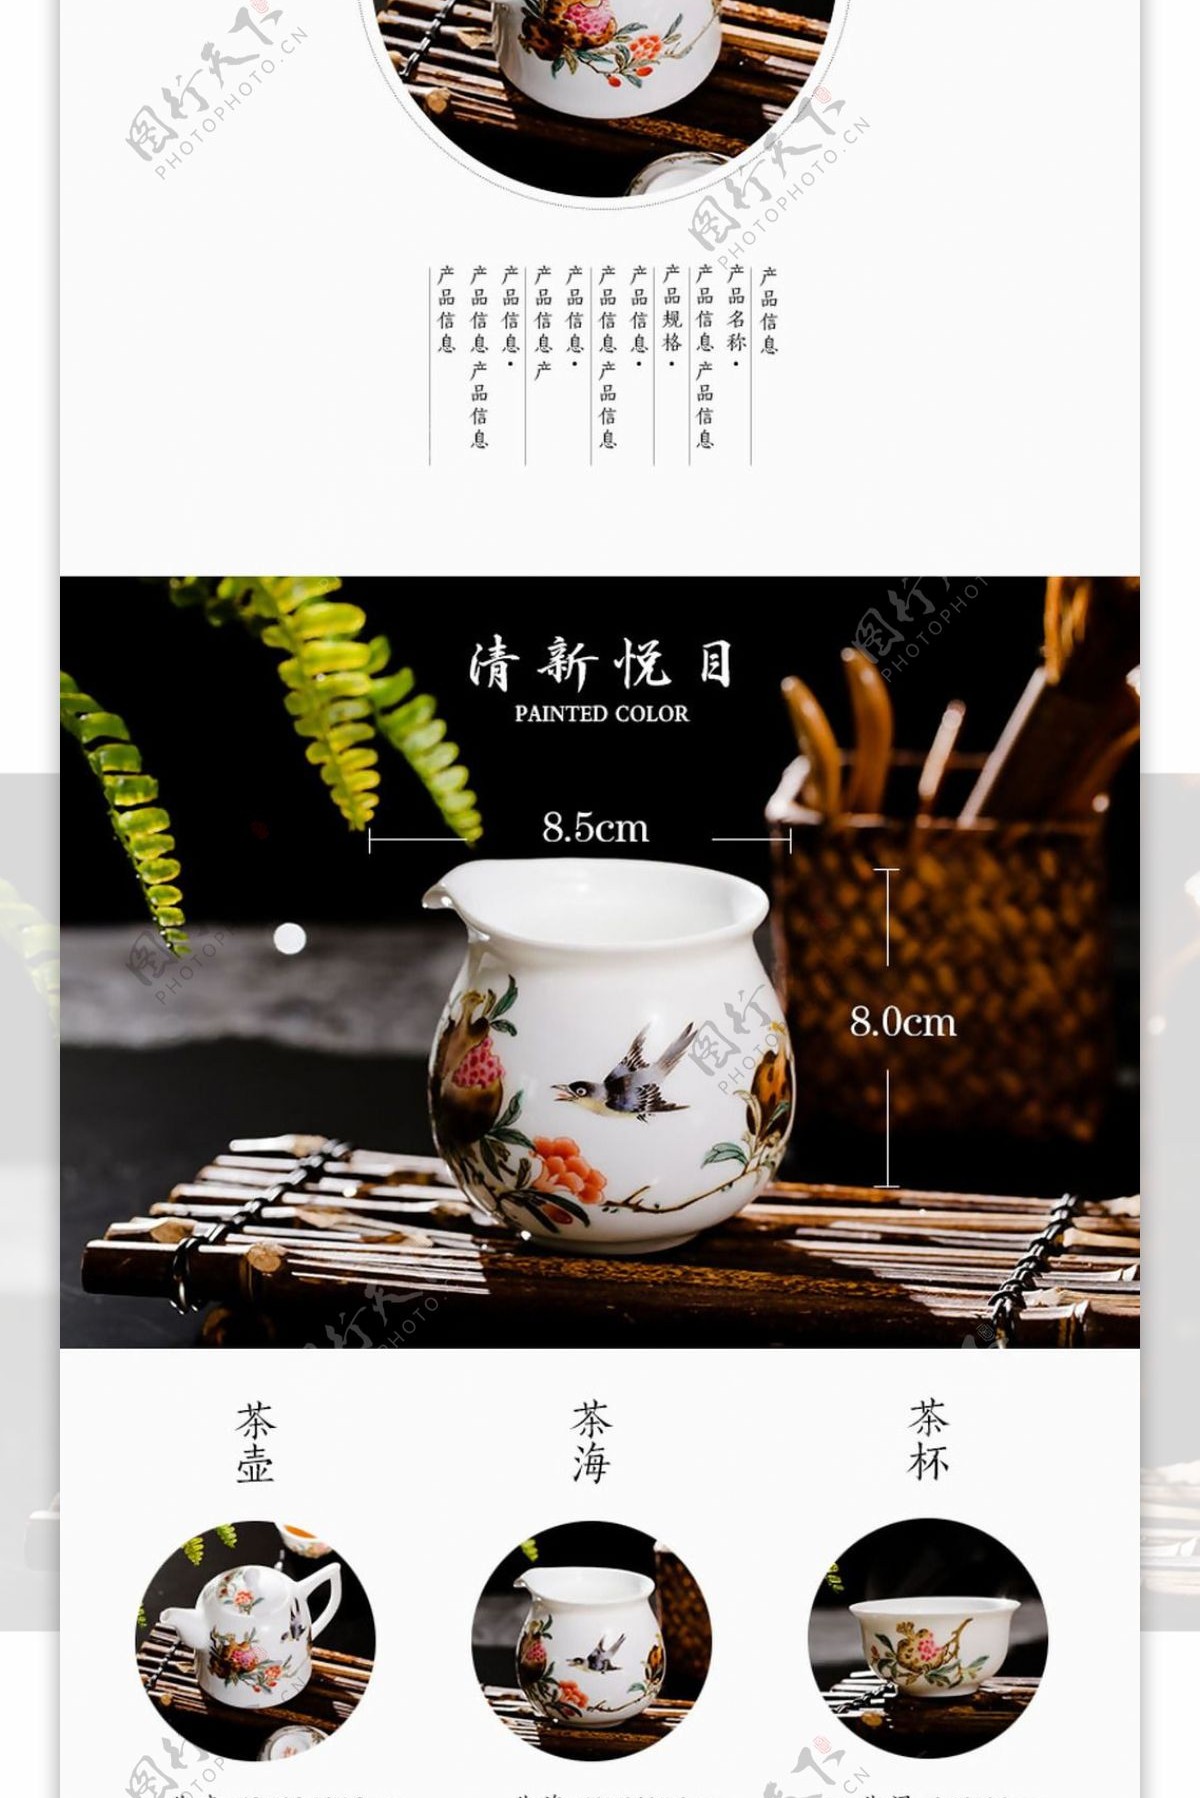 陶瓷茶具淘宝天猫详情页设计